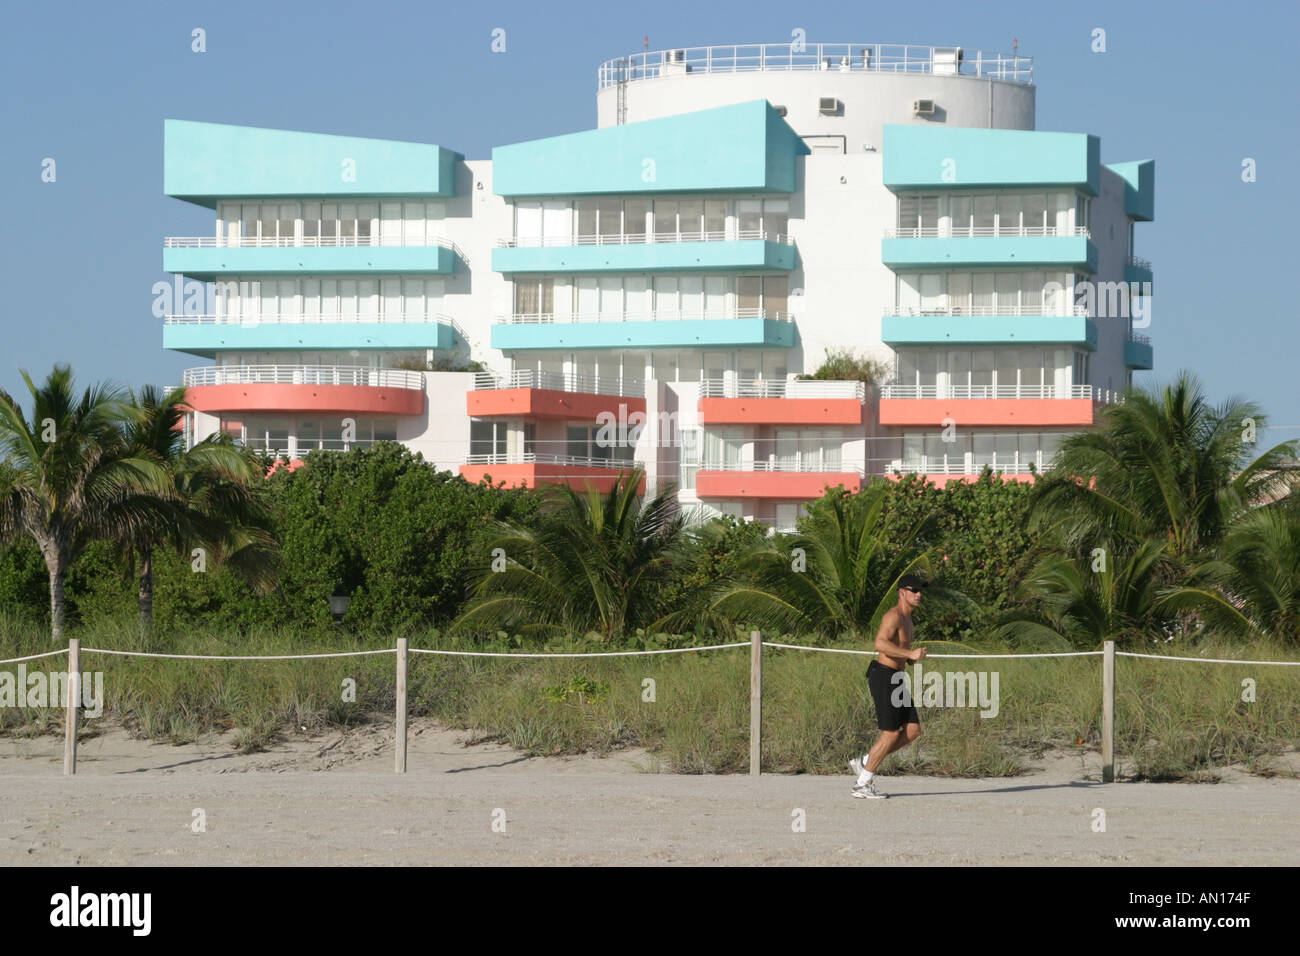 Miami Beach Florida,Atlantic Shore,costa,costa,costa,mare,pareggiatore,jogger,jogging,runner,runner,esercizio in corso,aerobica,salute,runner,fine Foto Stock